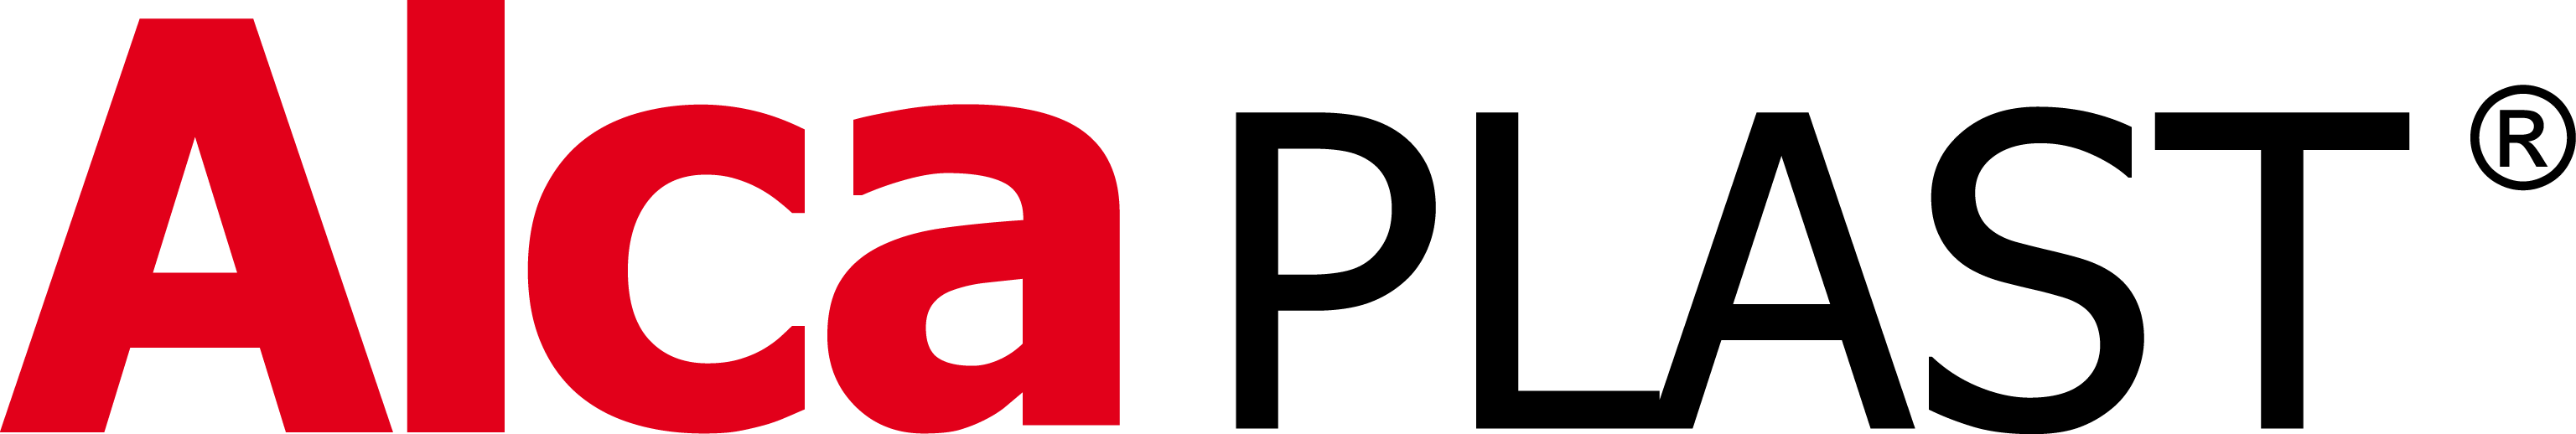 Логотип бренда AlcaPlast